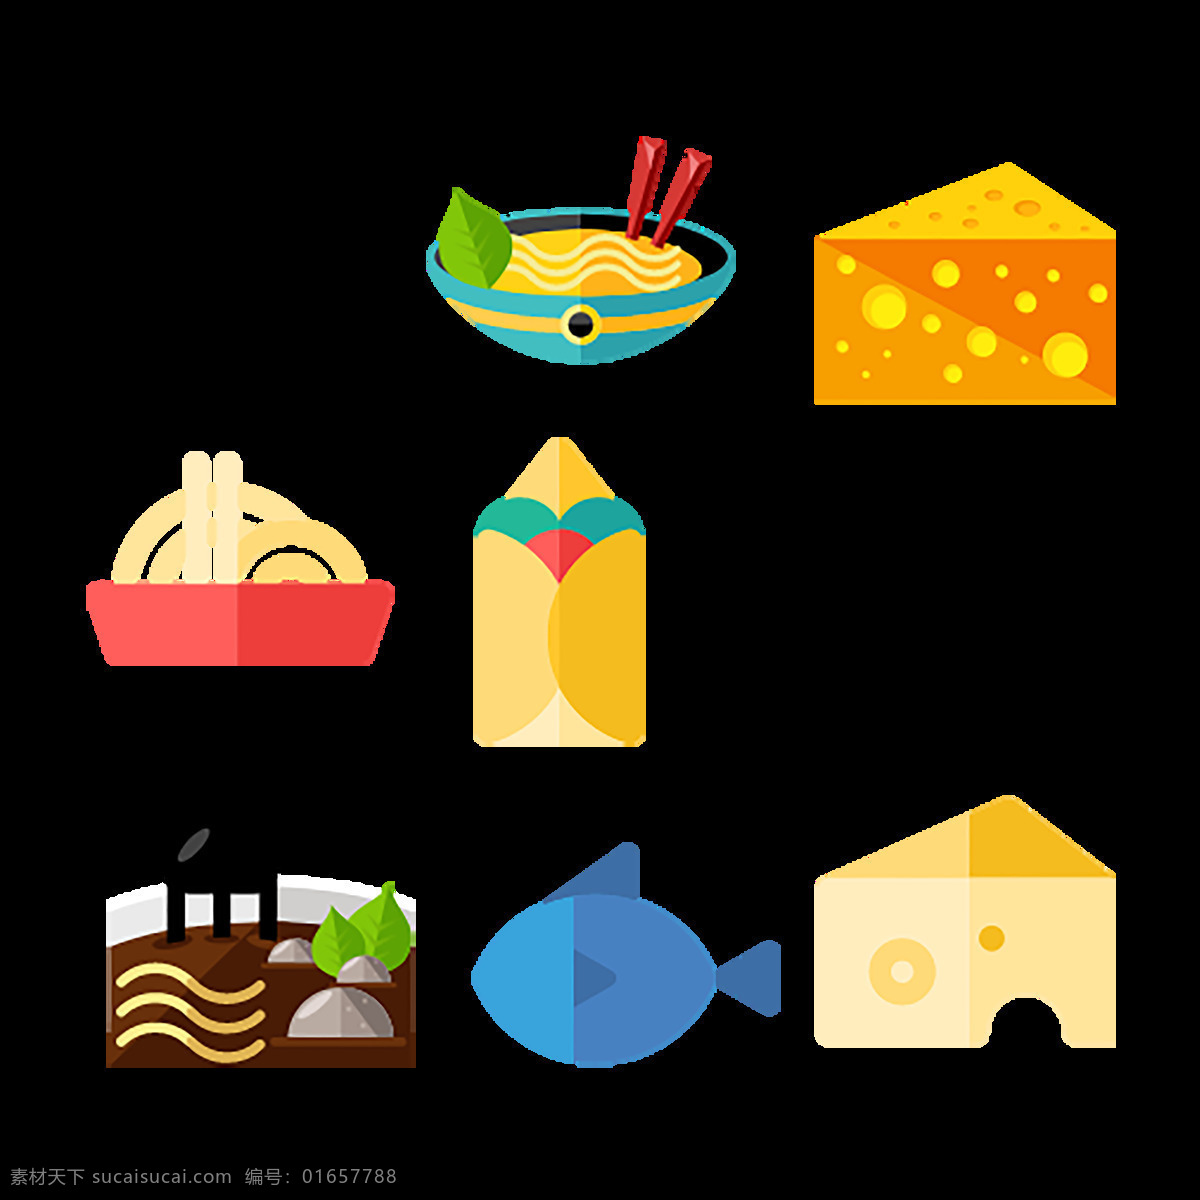 食物 食品 icon 图标素材 卡通图案 图案 卡通png 汉堡 奶油 蛋糕 糖 薯条 牛奶 热狗 披萨 扁平化png